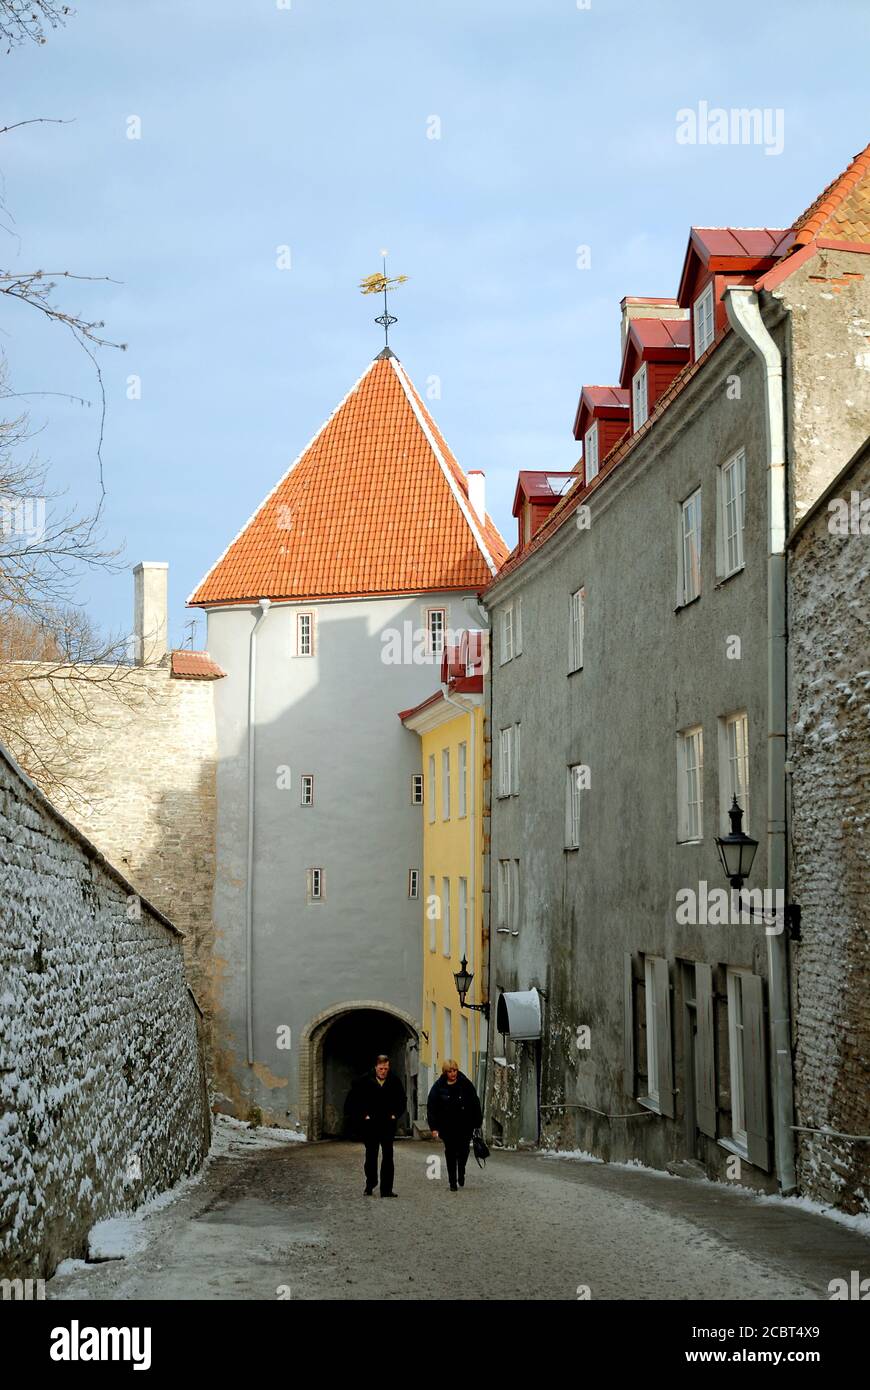 Eine Straße in der Altstadt von Tallinn mit den bunten alten Gebäuden. Zwei Menschen gehen in Tallinn, Estland, eine Straße entlang. Stockfoto